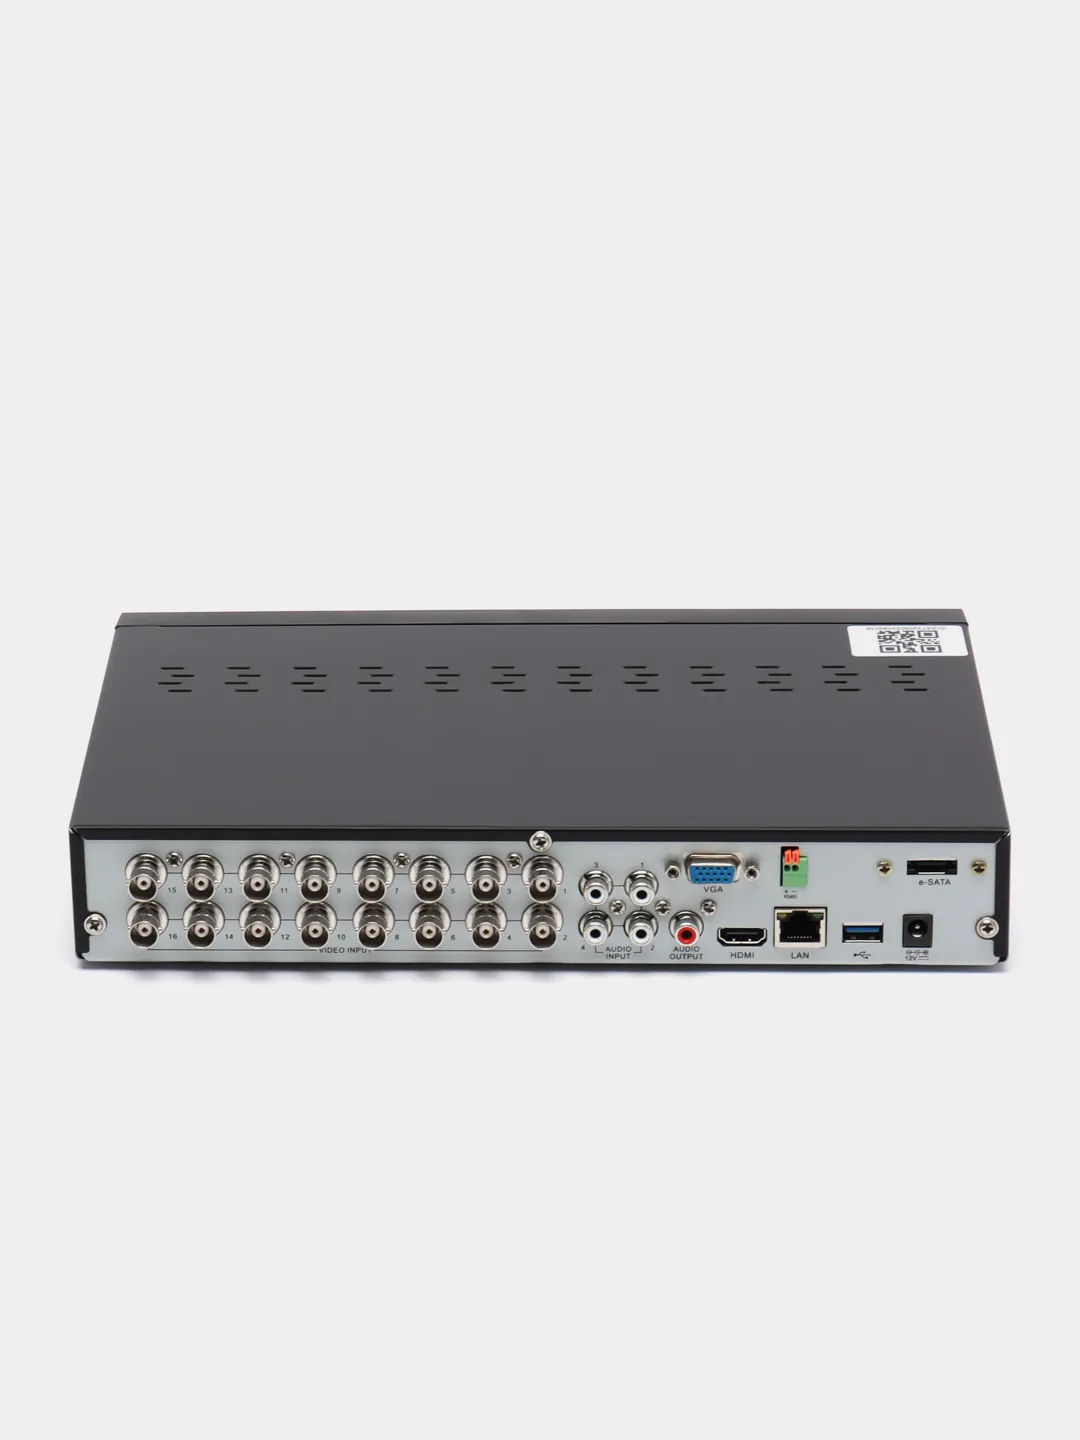 SVR-6110n v3.0 видеорегистратор гибридный. Подключение регистратора гибрид Эльбрус.